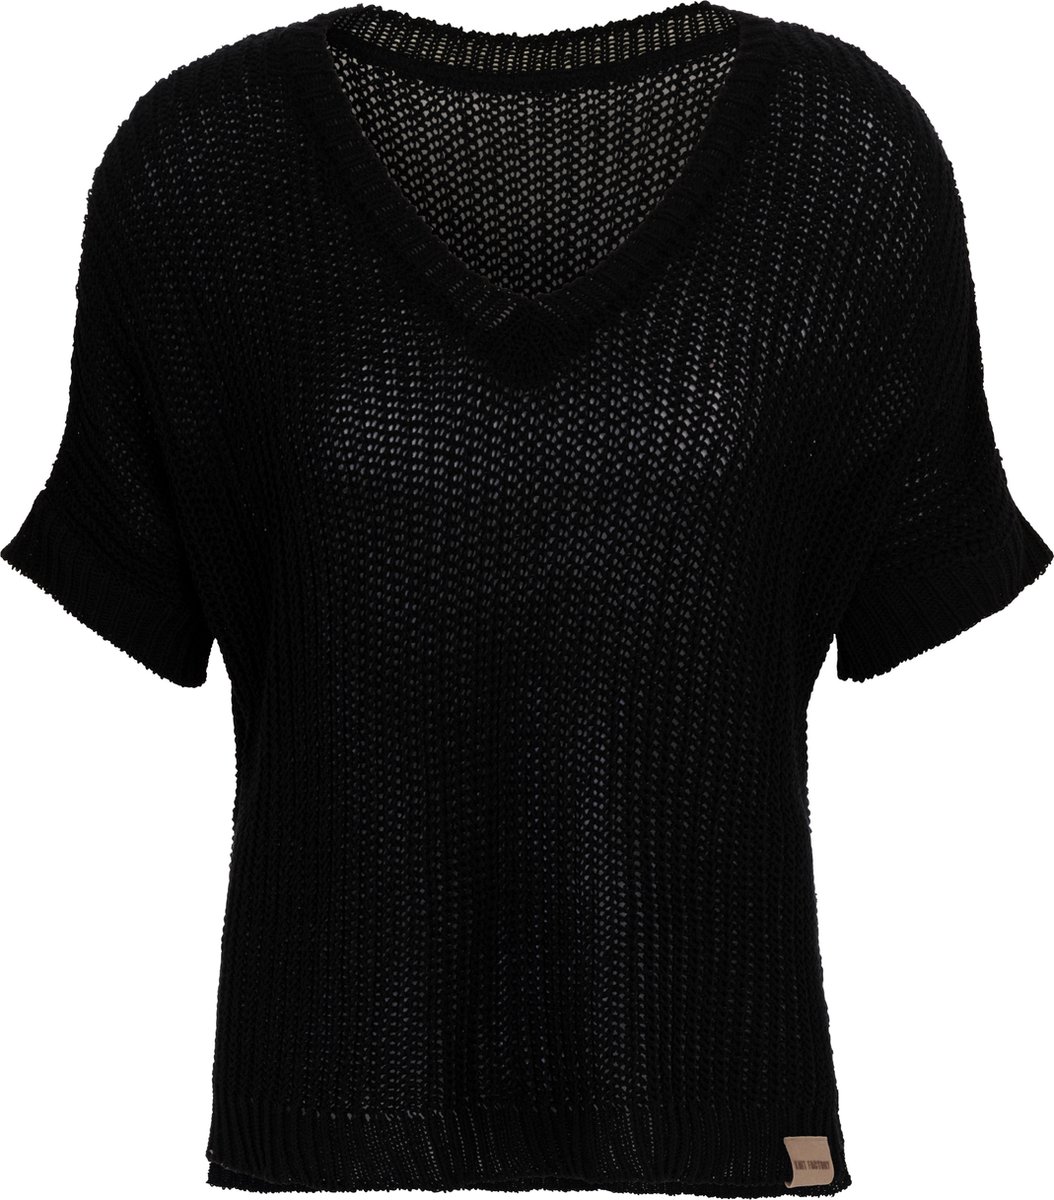 Knit Factory Daisy Gebreide Dames Top - Trui met korte mouwen - Gebreide t-shirt - T-shirt - Shirt gemaakt van 80% gerecyceld katoen - Duurzaam & milieuvriendelijk - Korte mouw - V-hals - Zwart - 36/44